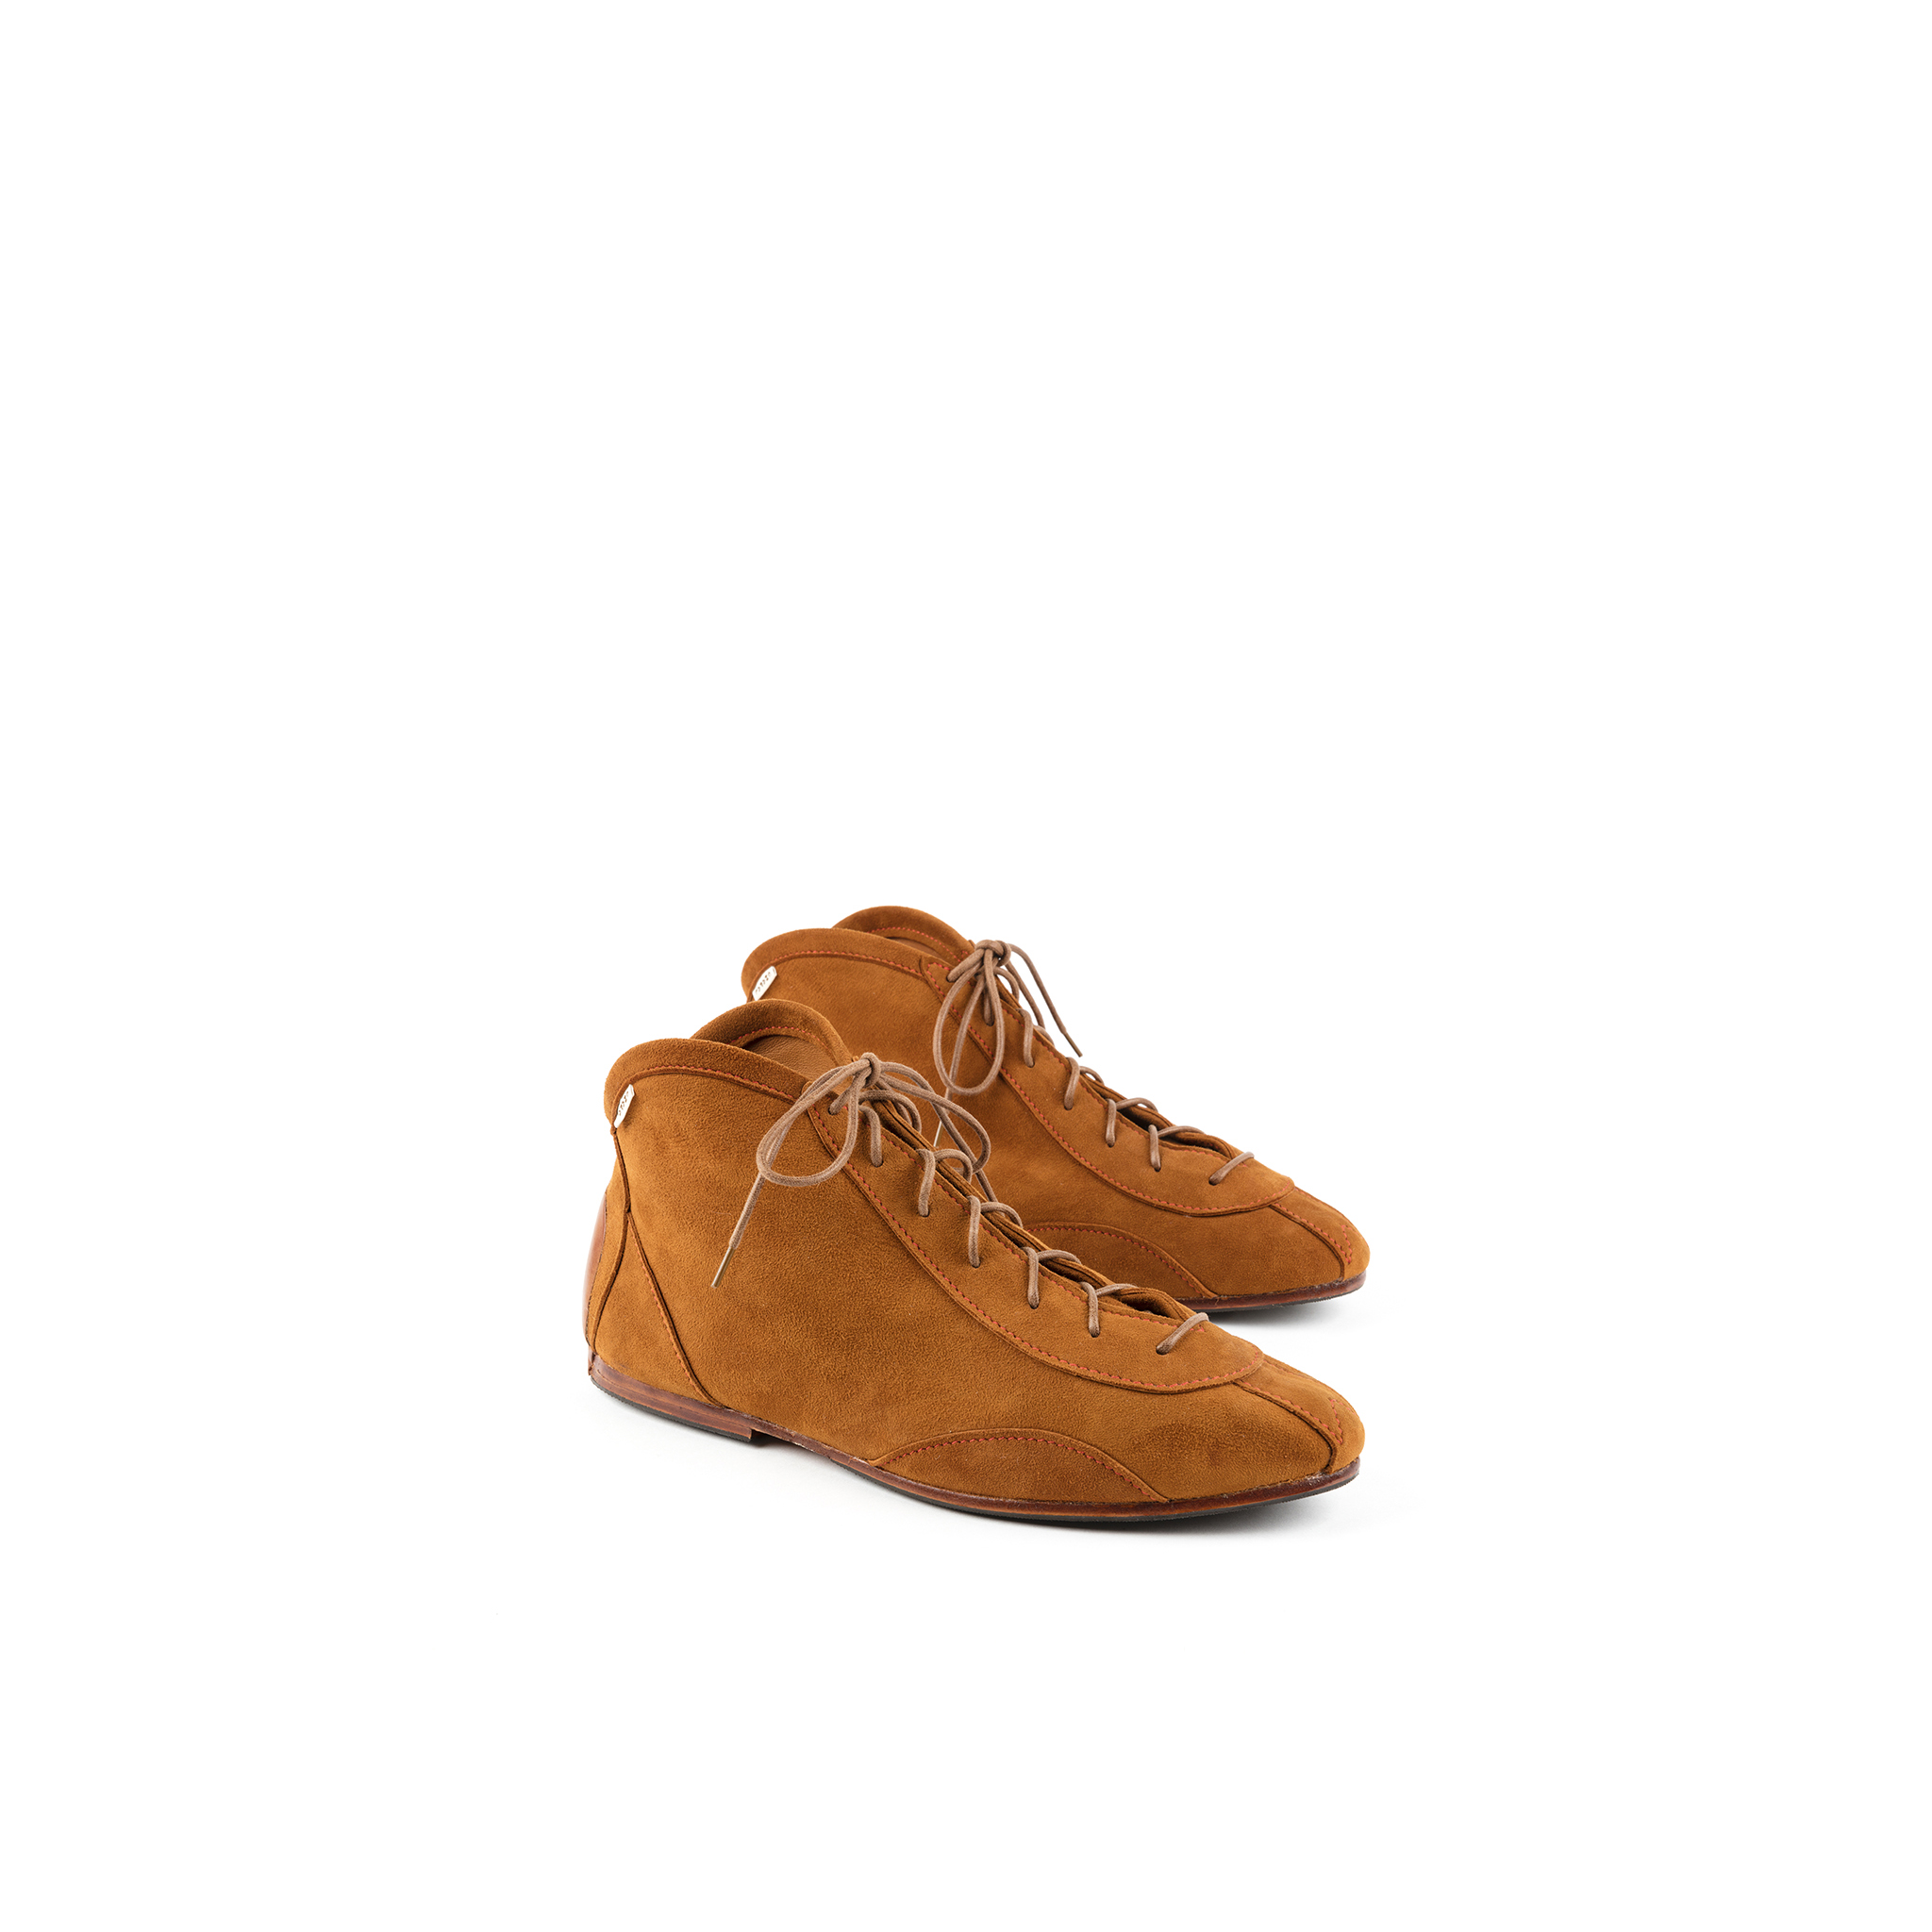 Pilot 60's Shoes - Suede leather - Suzy color